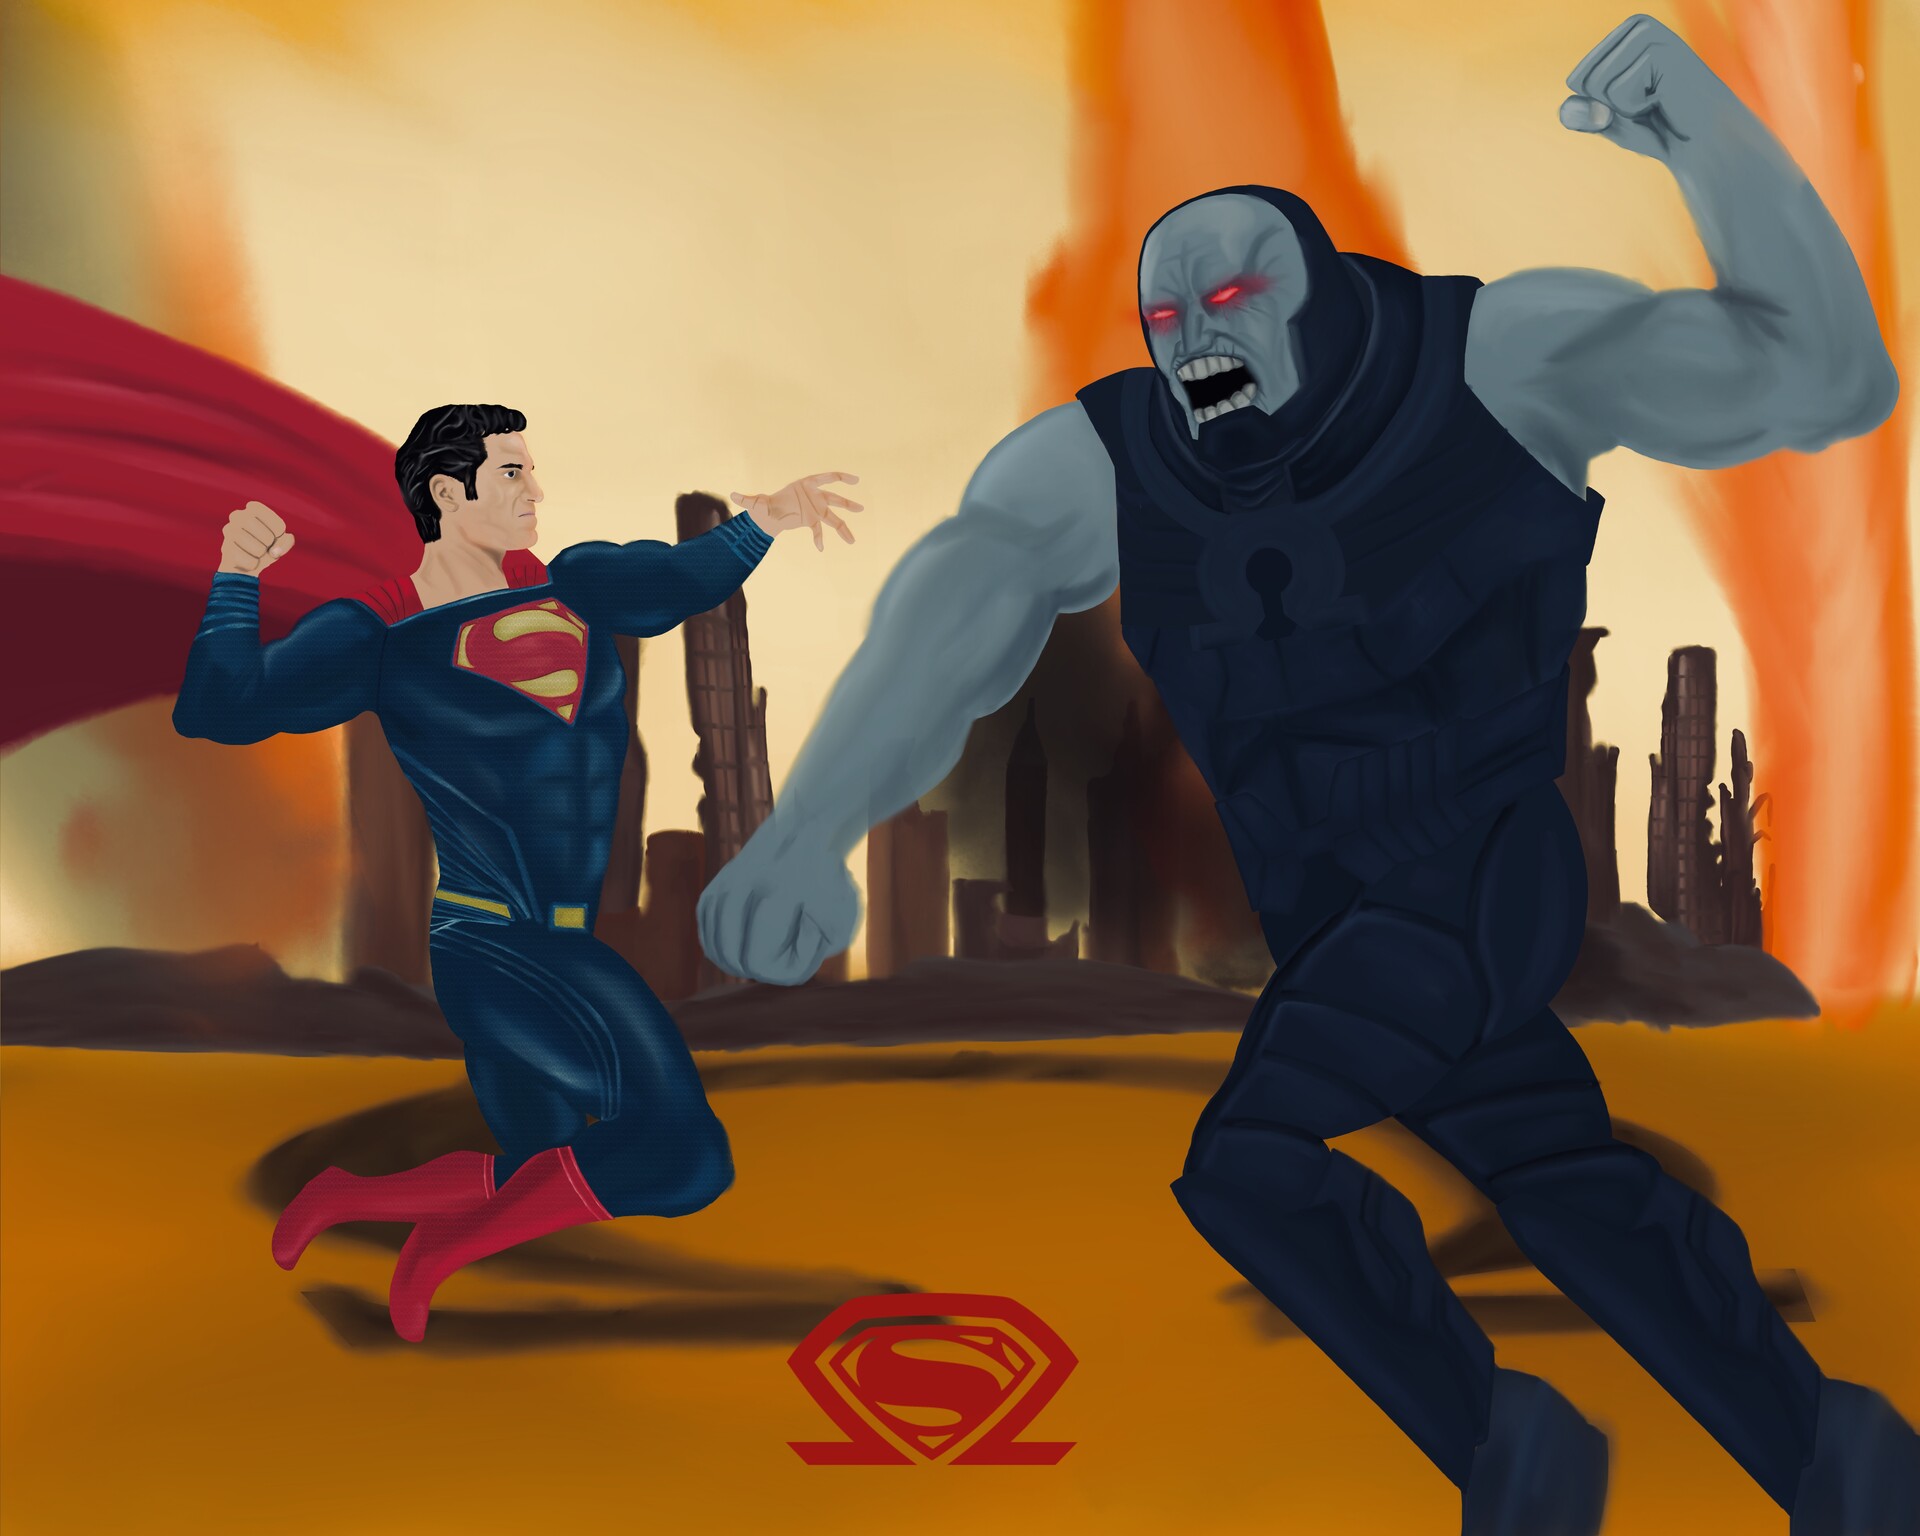 ArtStation - Superman vs Darkseid